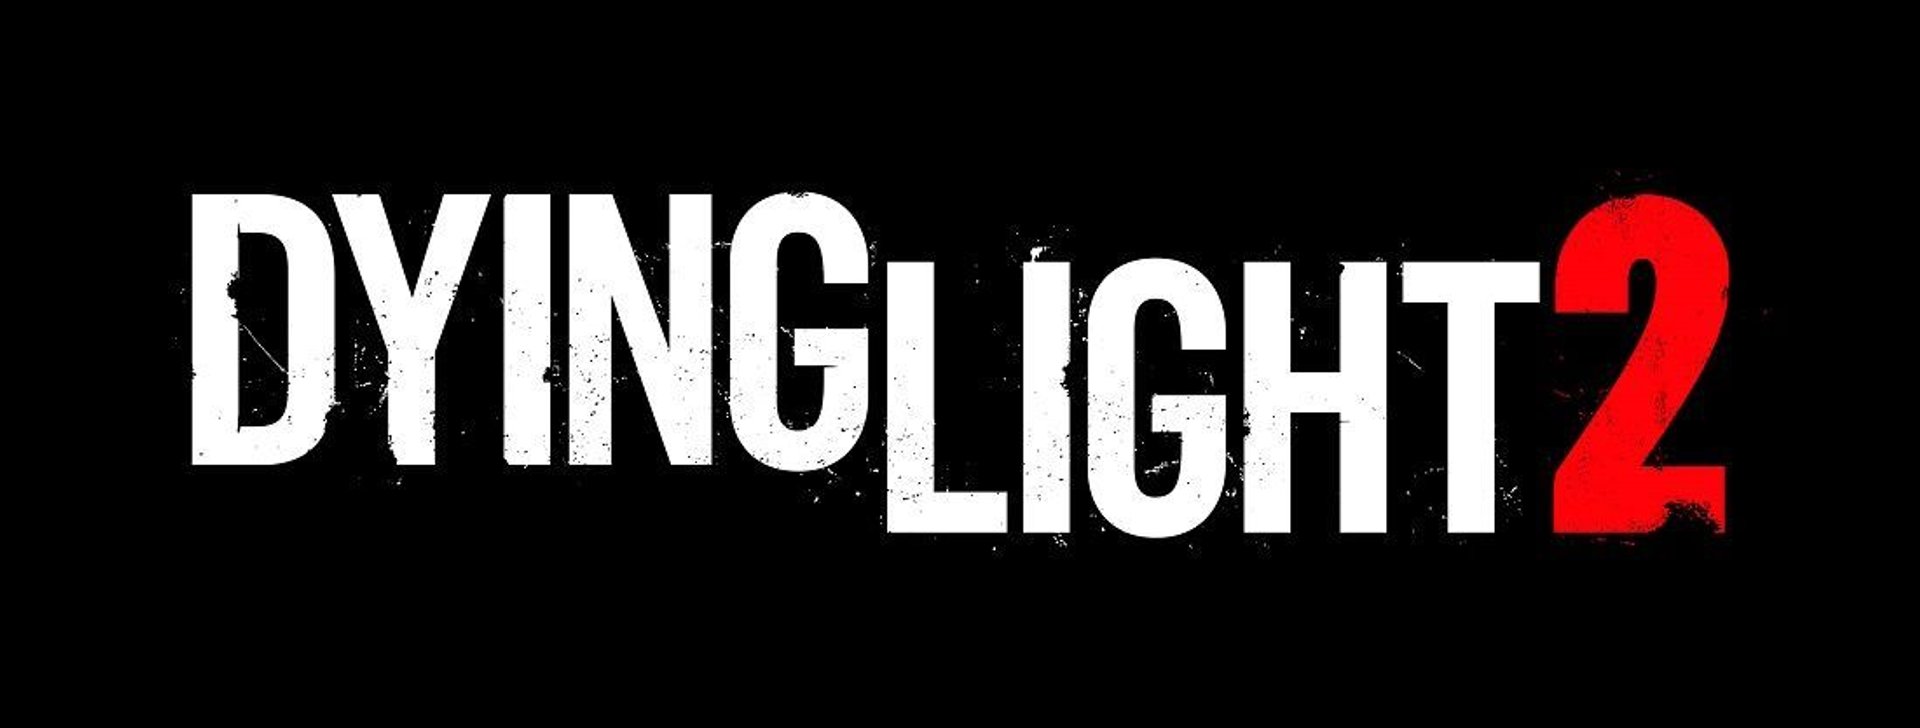 Dying Light 2 logo